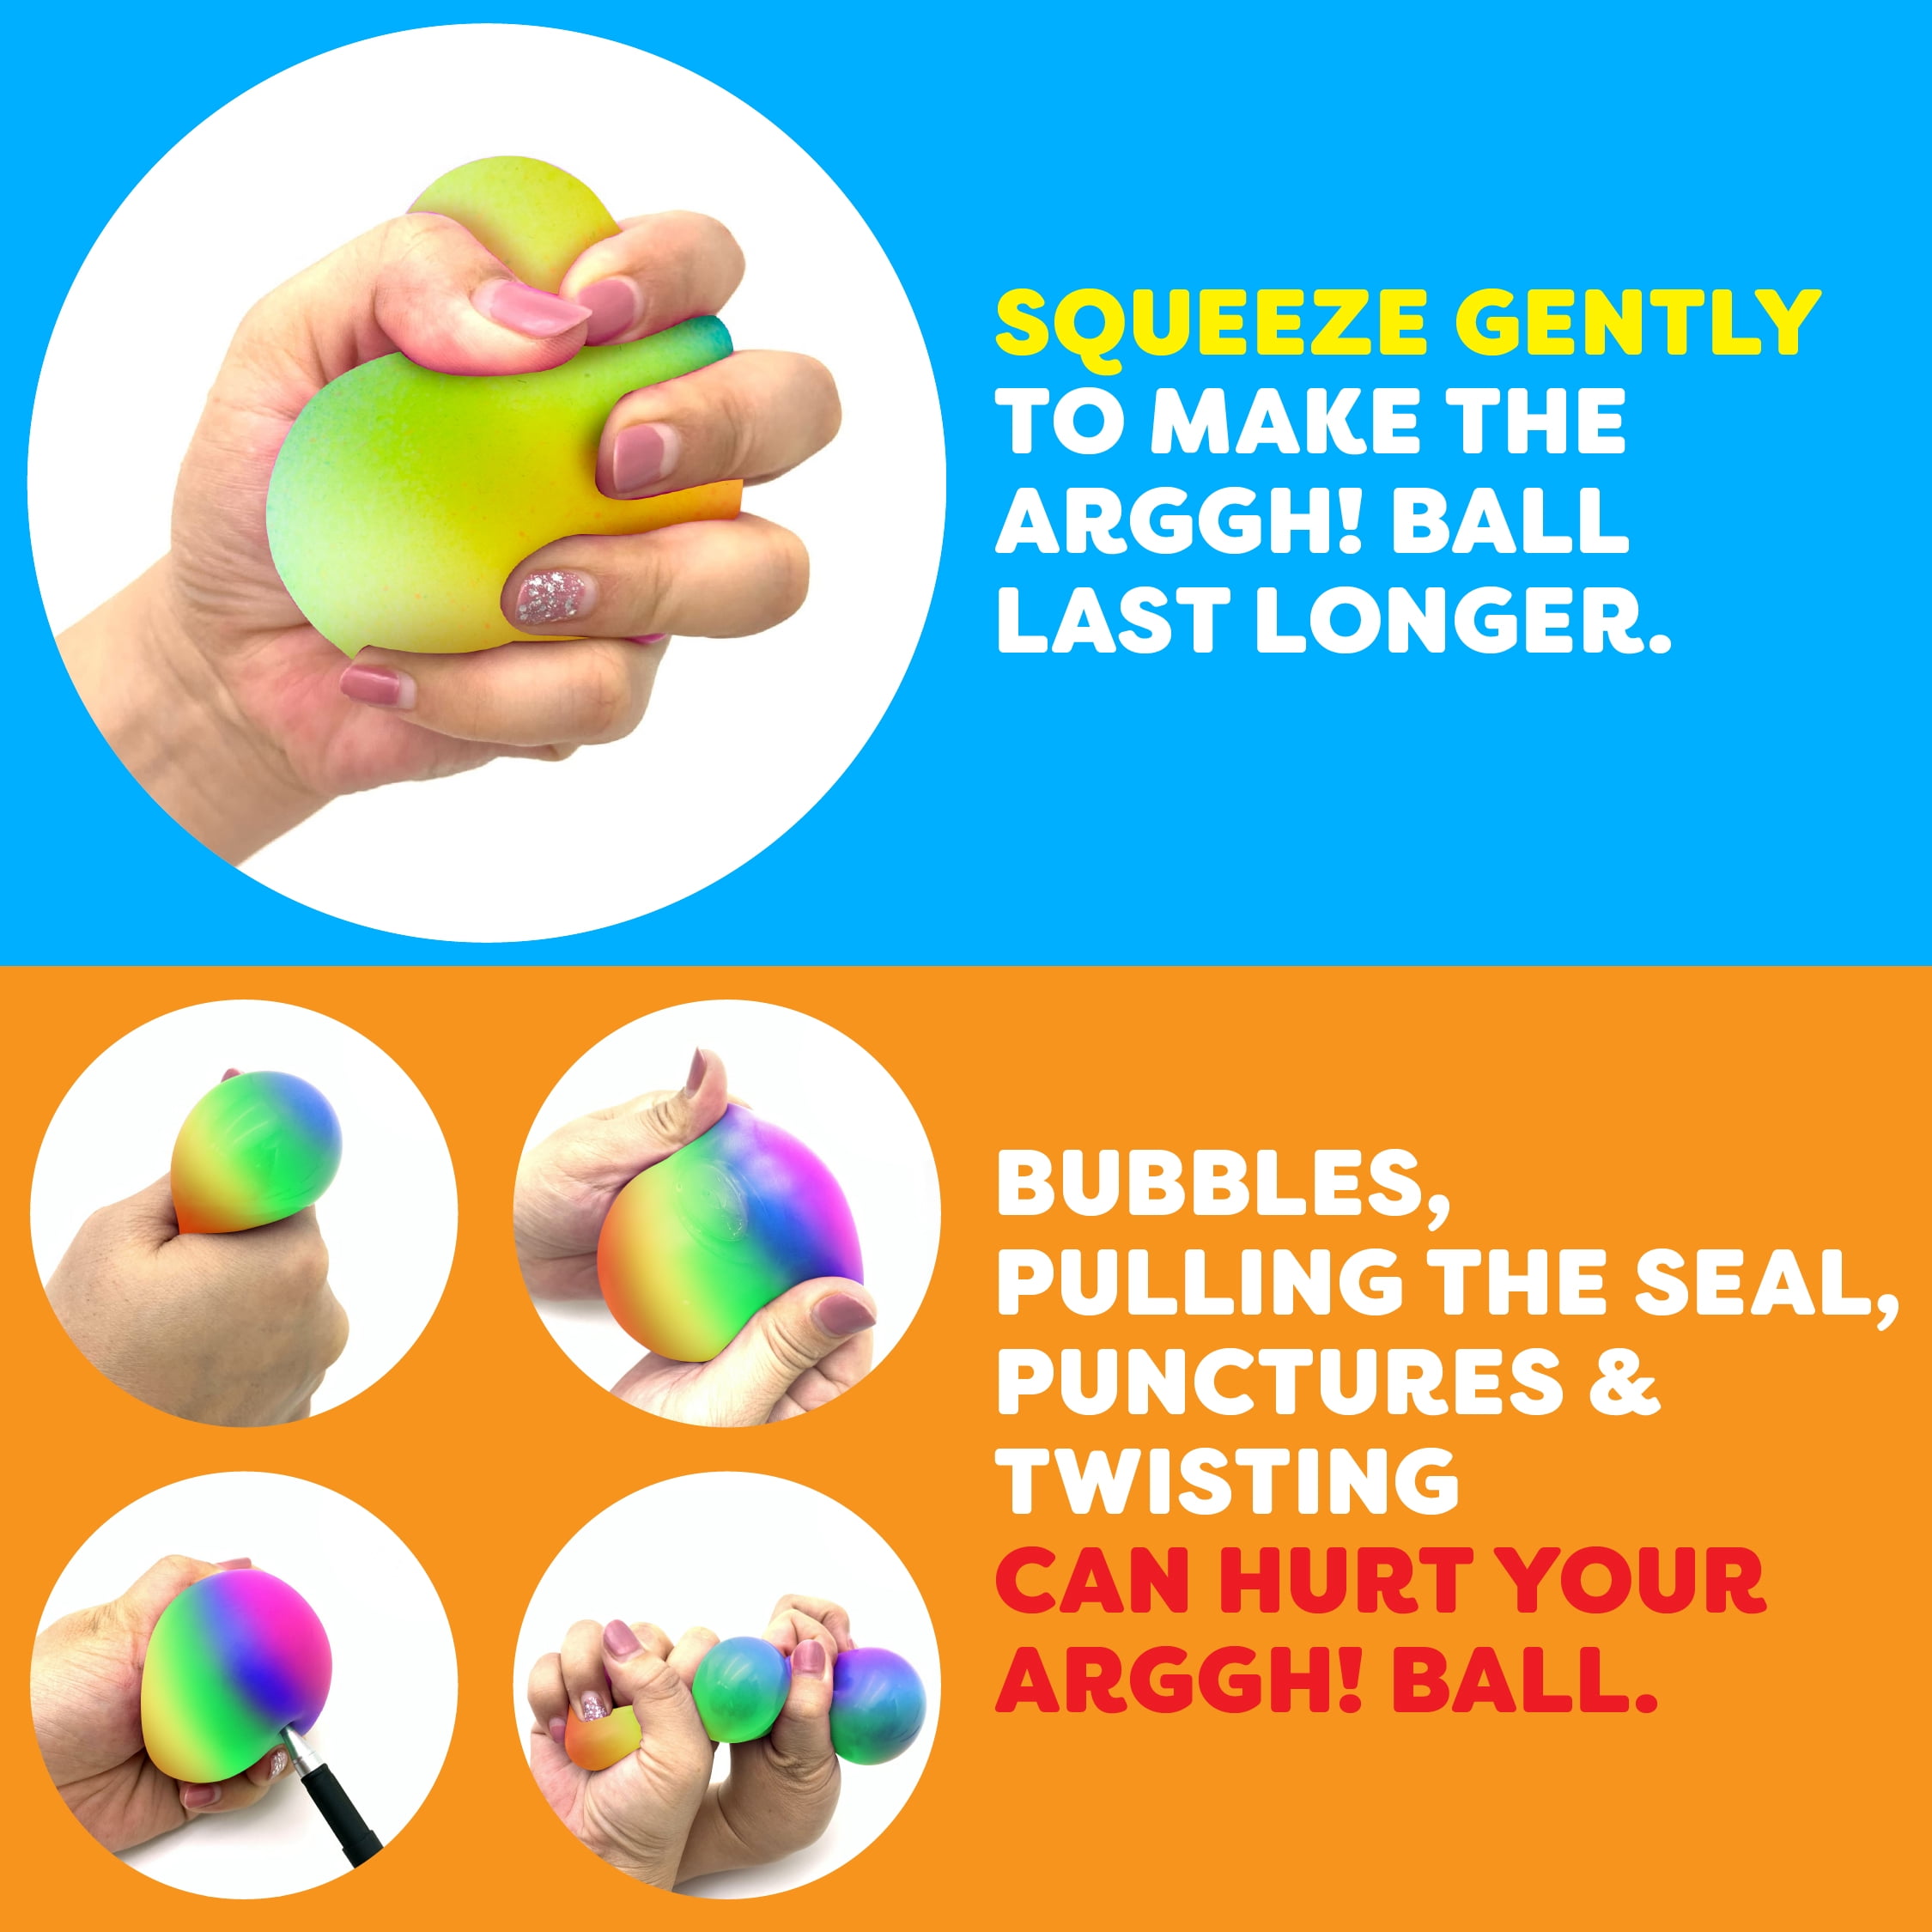 Power Your Fun Fidget Toy Rainbow squishy Stress Ball 